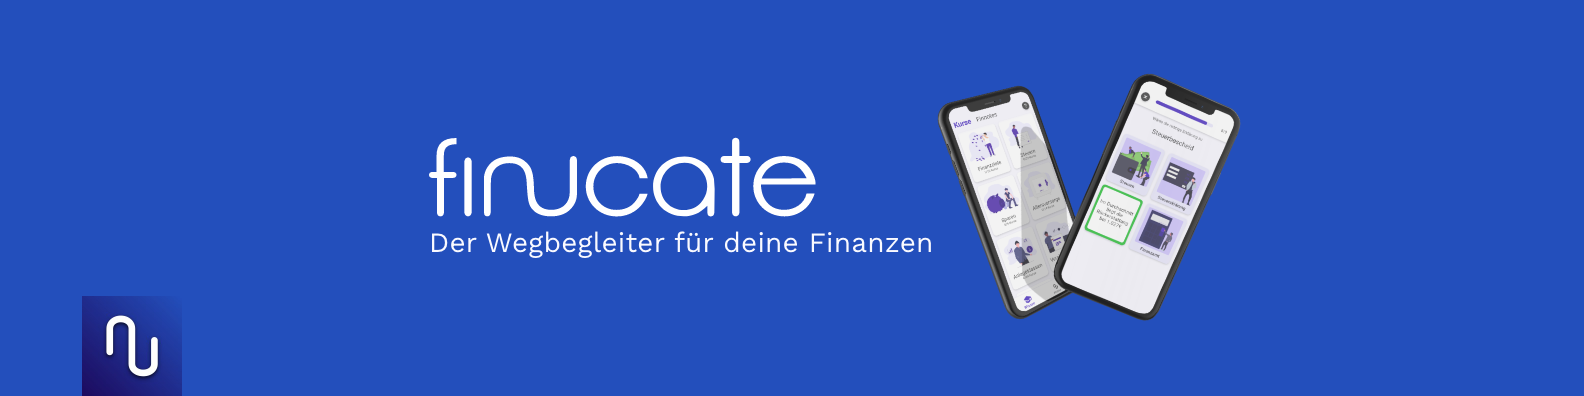 Finucate / startup von Pforzheim / Background